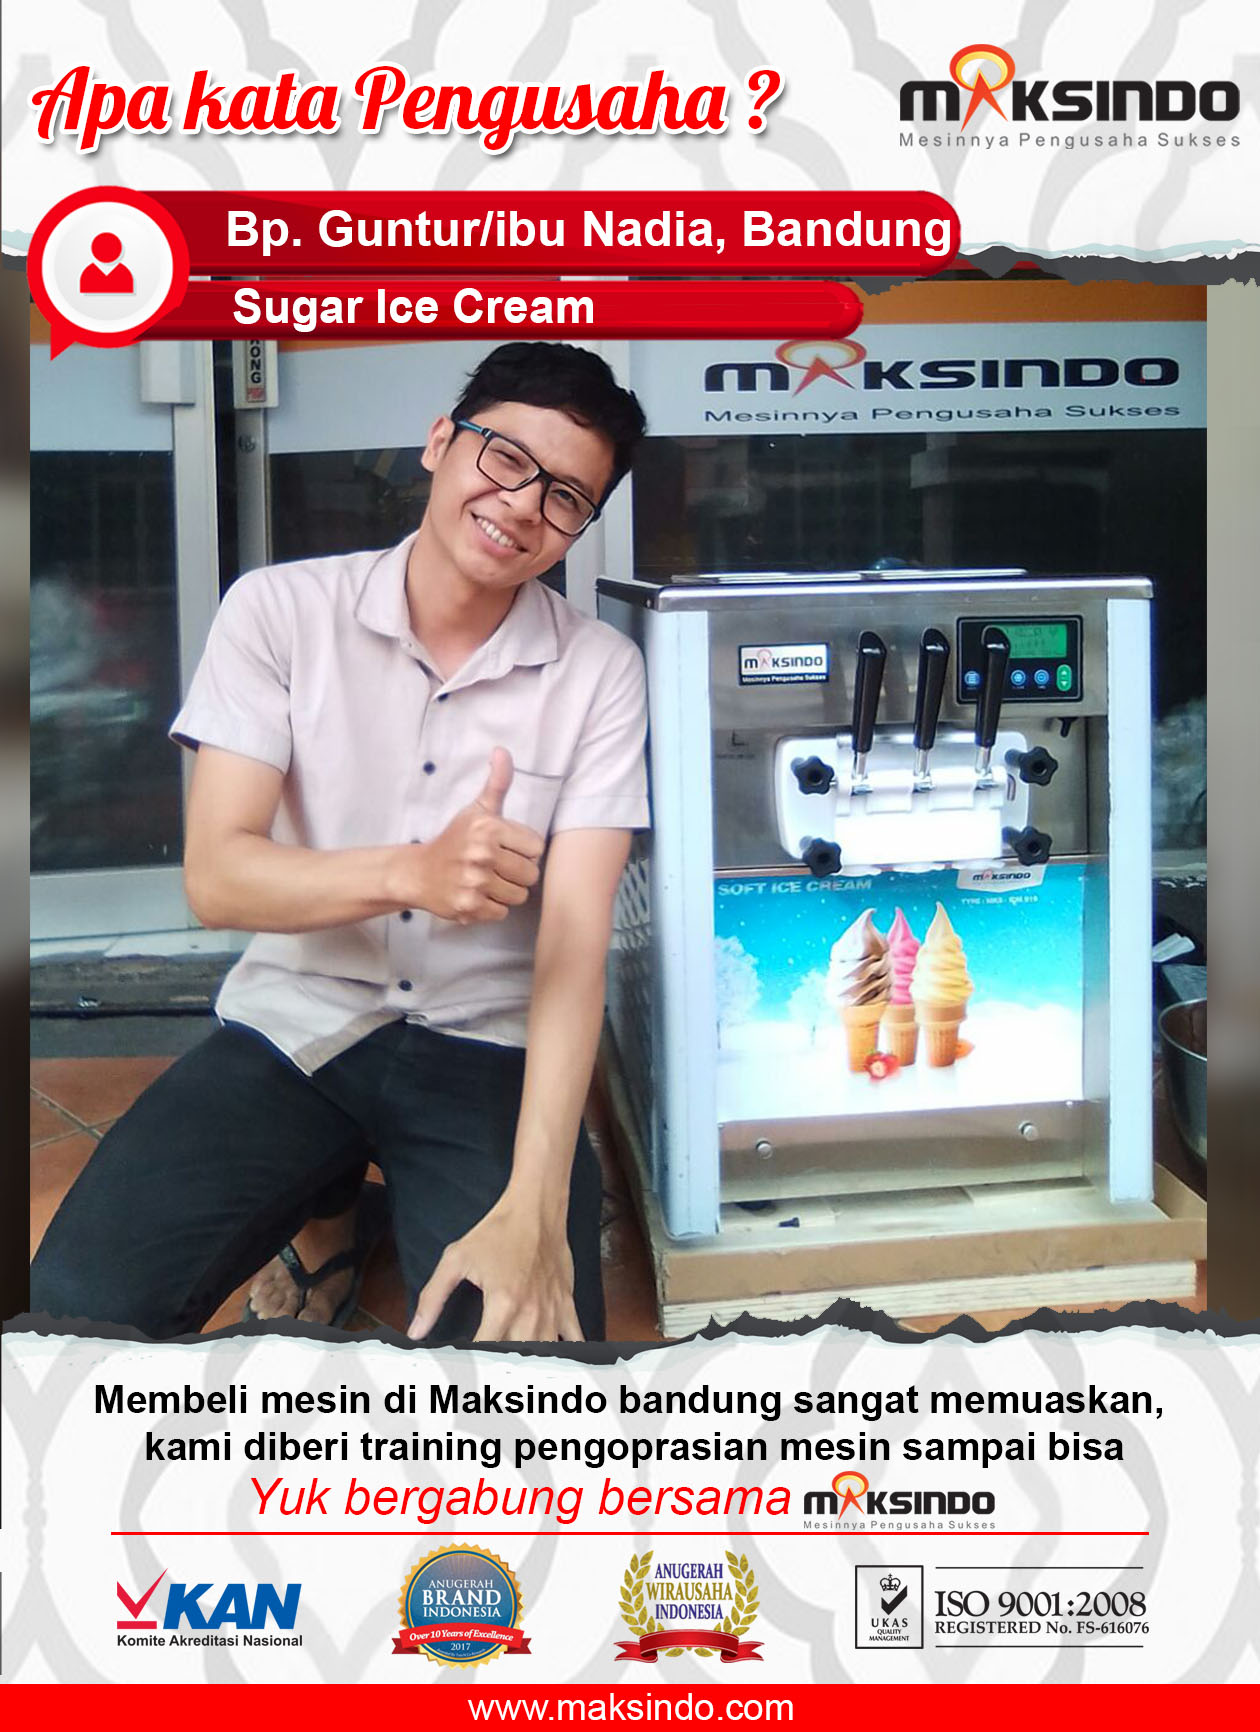 Sugar Ice Cream : Mesin Maksindo Sangat Memuaskan